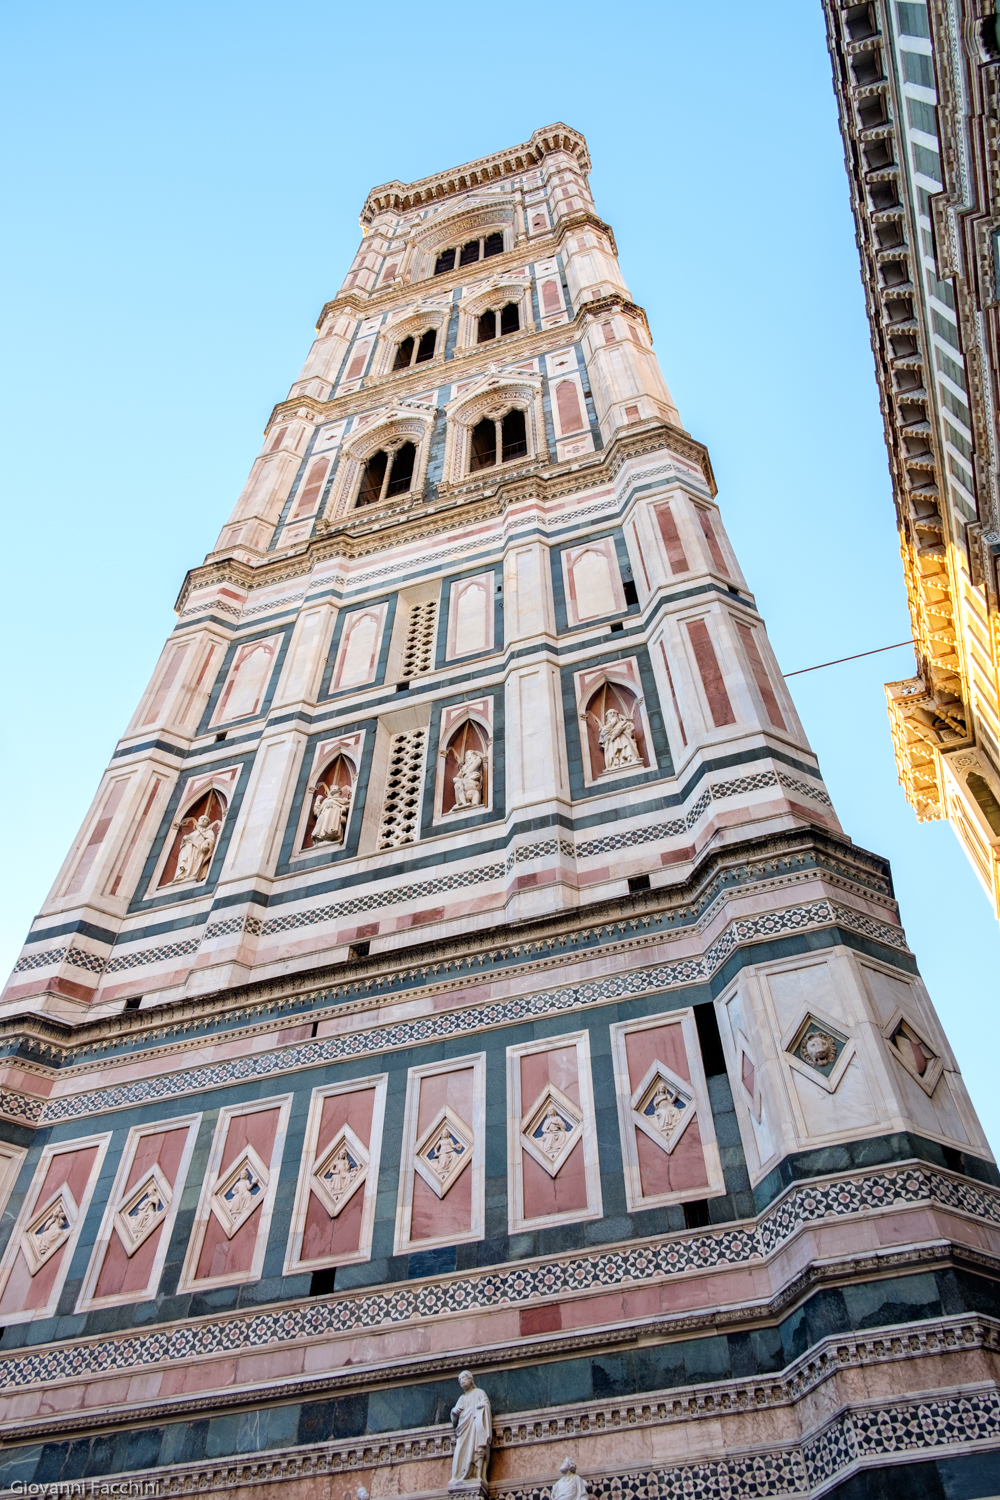 Campanile di Giotto - Firenze